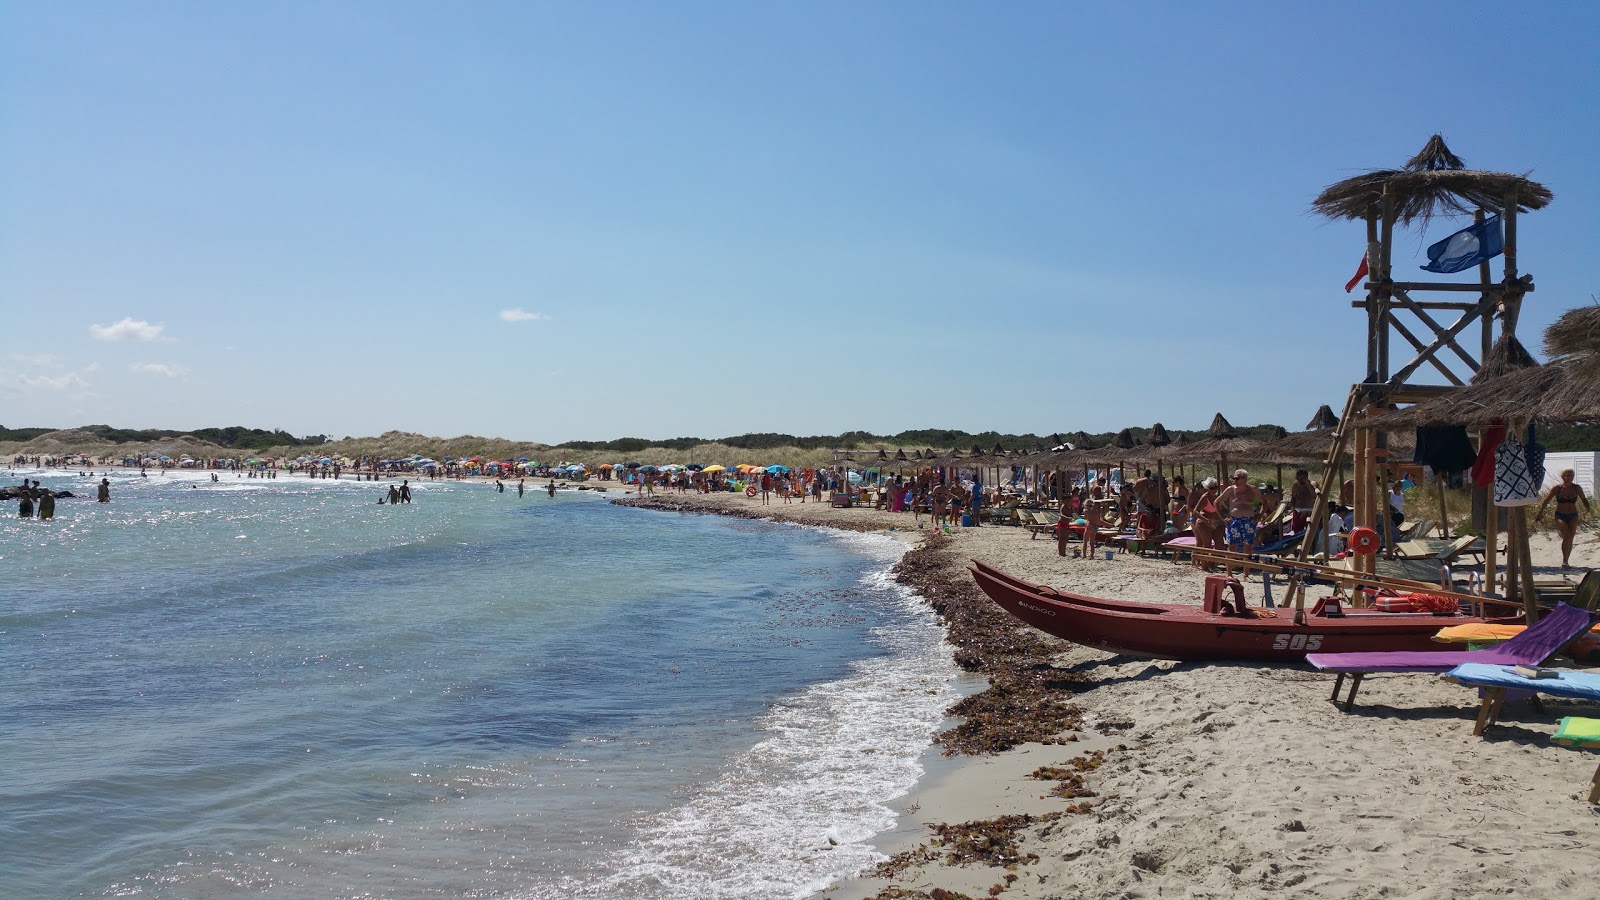 Fotografija Punta Penna beach nahaja se v naravnem okolju